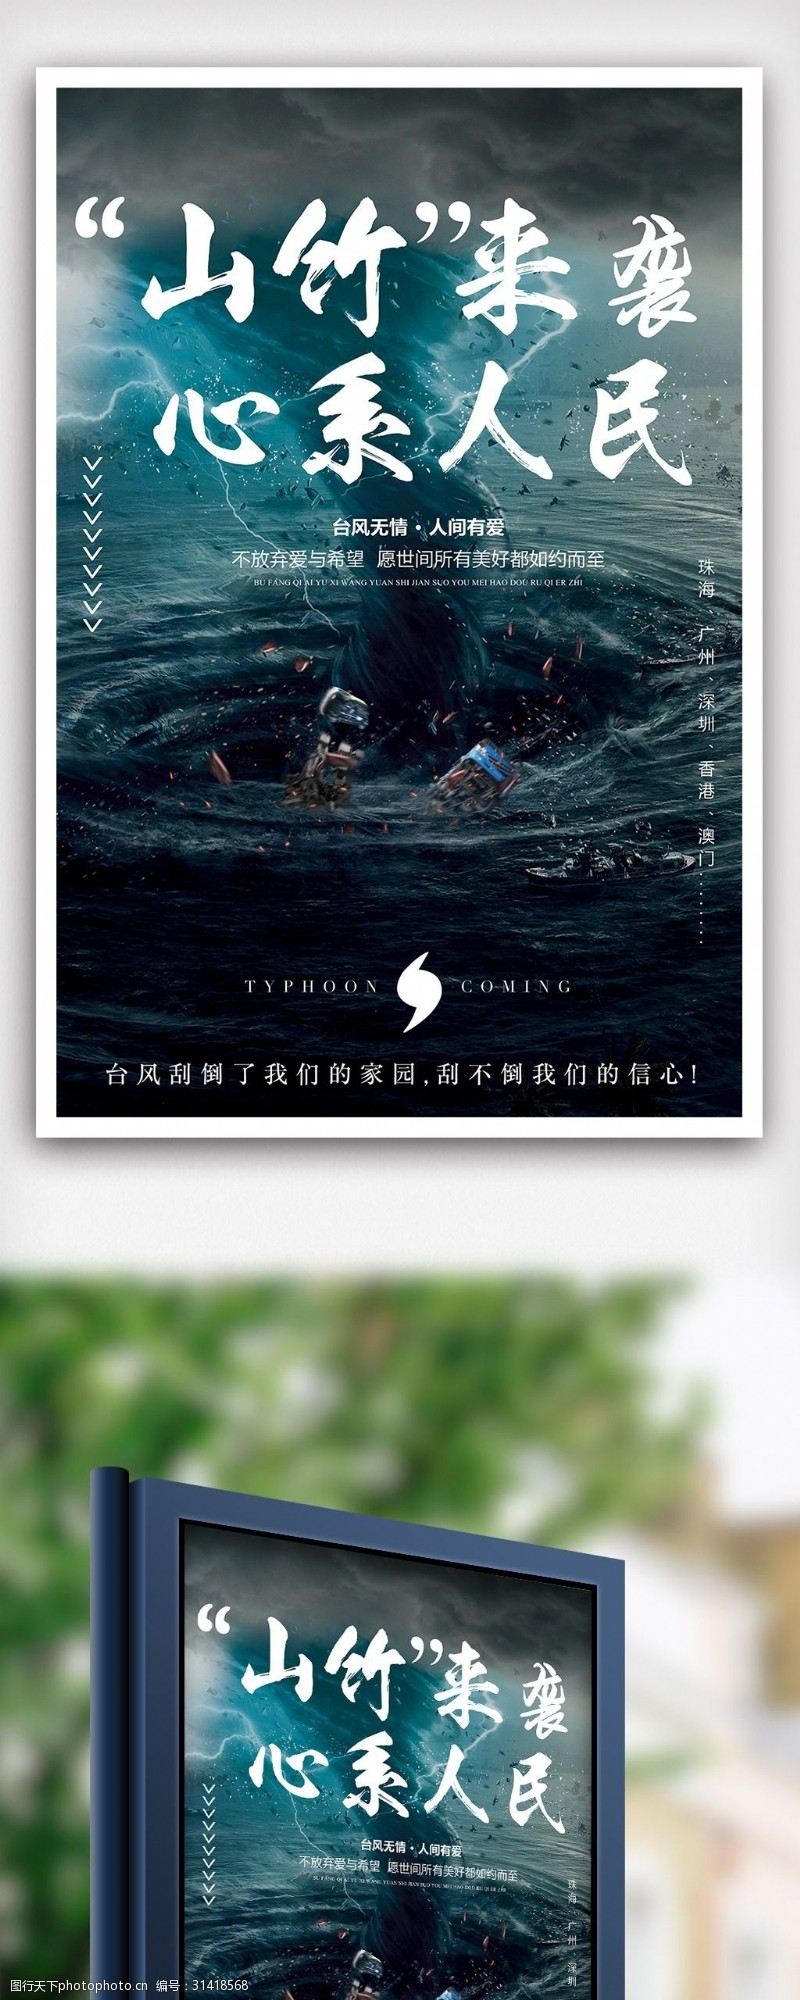 改变自己2018山竹台风鼓励海报设计经典案例模板